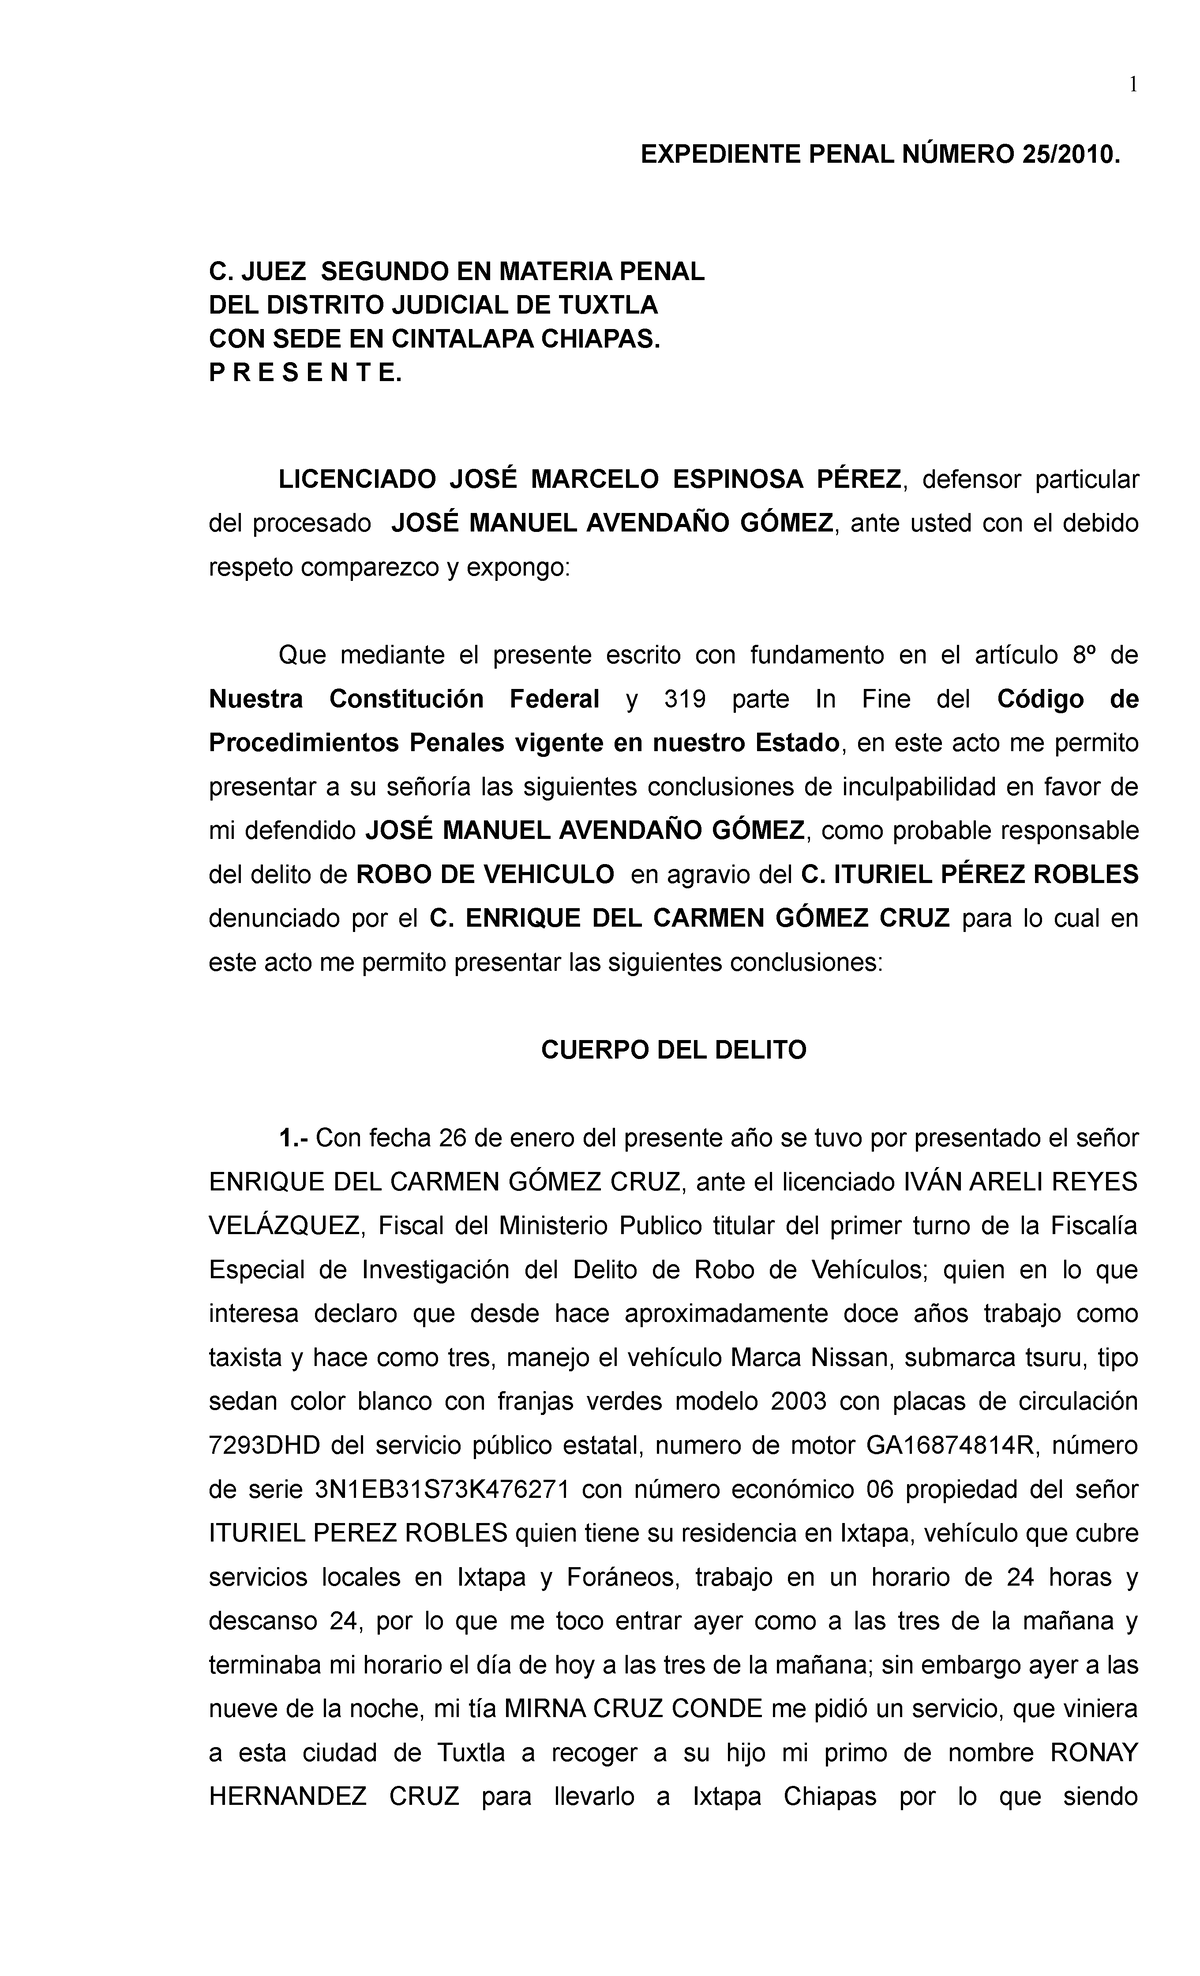 Conclusiones Jose Manuel Avendaño - Derecho penal - UNACH - Studocu